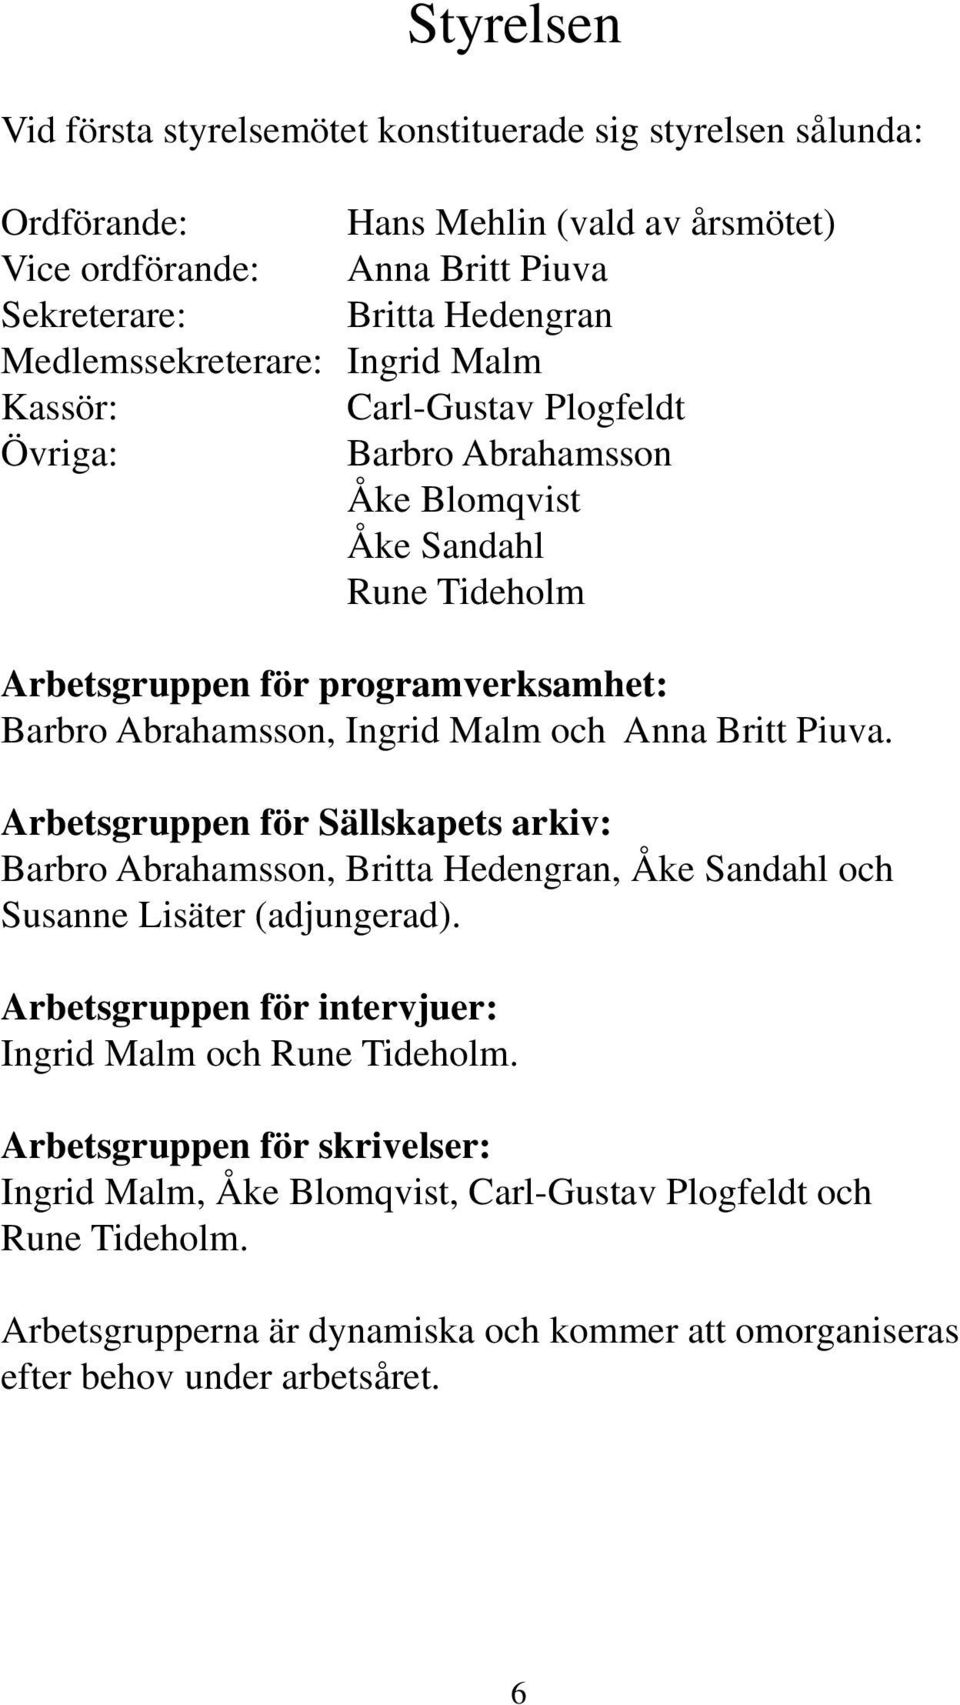 Malm och Anna Britt Piuva. Arbetsgruppen för Sällskapets arkiv: Barbro Abrahamsson, Britta Hedengran, Åke Sandahl och Susanne Lisäter (adjungerad).